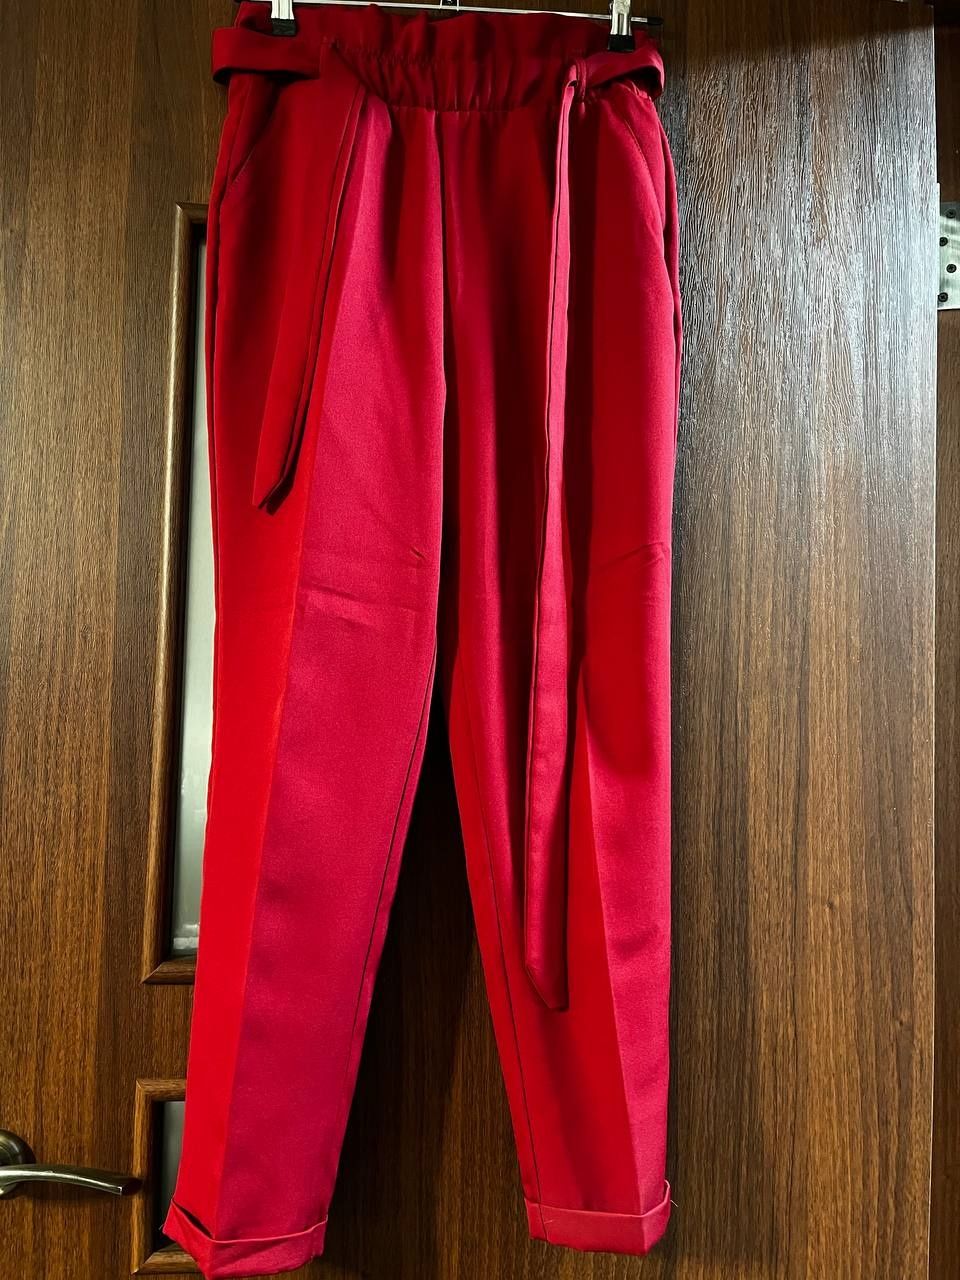 Класичні штани червоного кольору